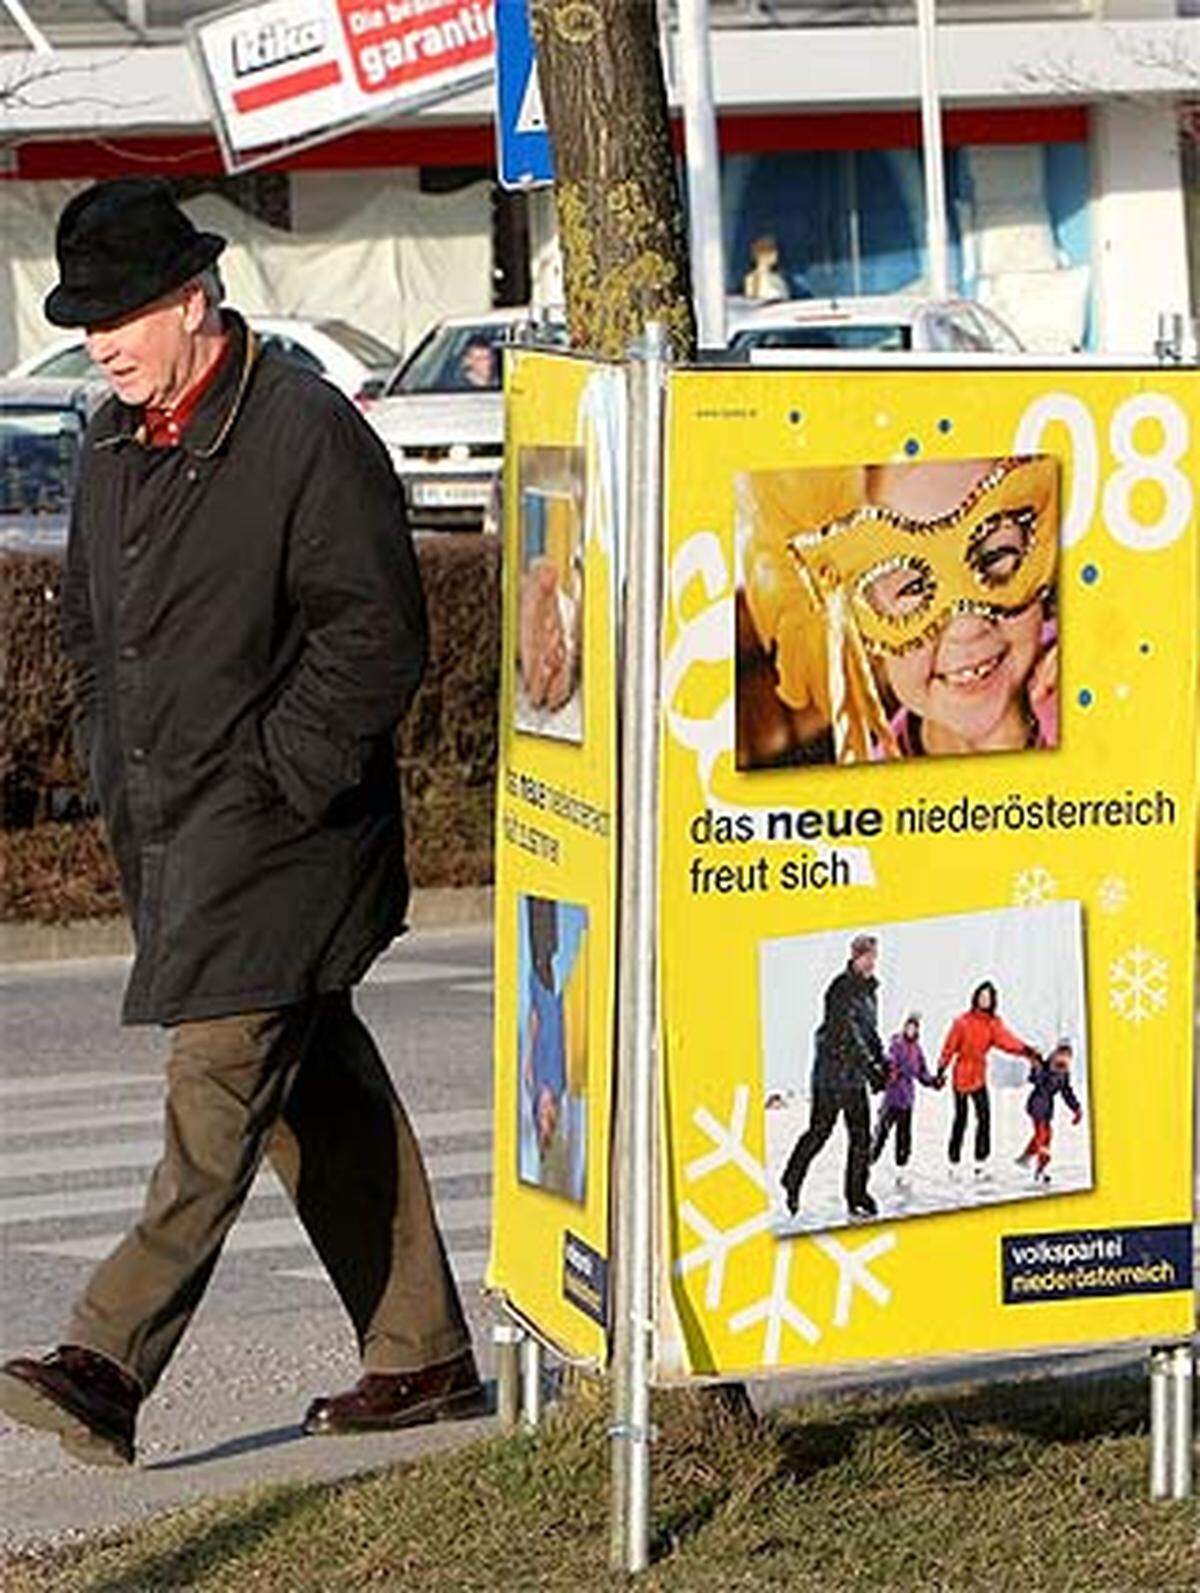 Manchmal sind es die Bilder auf den Plakaten, die Rätsel aufgeben. "Das neue Niederösterreich freut sich", so die ÖVP. Worauf? Dem Wahlplakat zufolge auf Verkleidungen und Eislaufen.  Ungünstigerweise ist der Fasching vorbei, für den Wintersport ist es oft schon zu warm. Sieht nach einer langweiligen Fastenzeit aus.